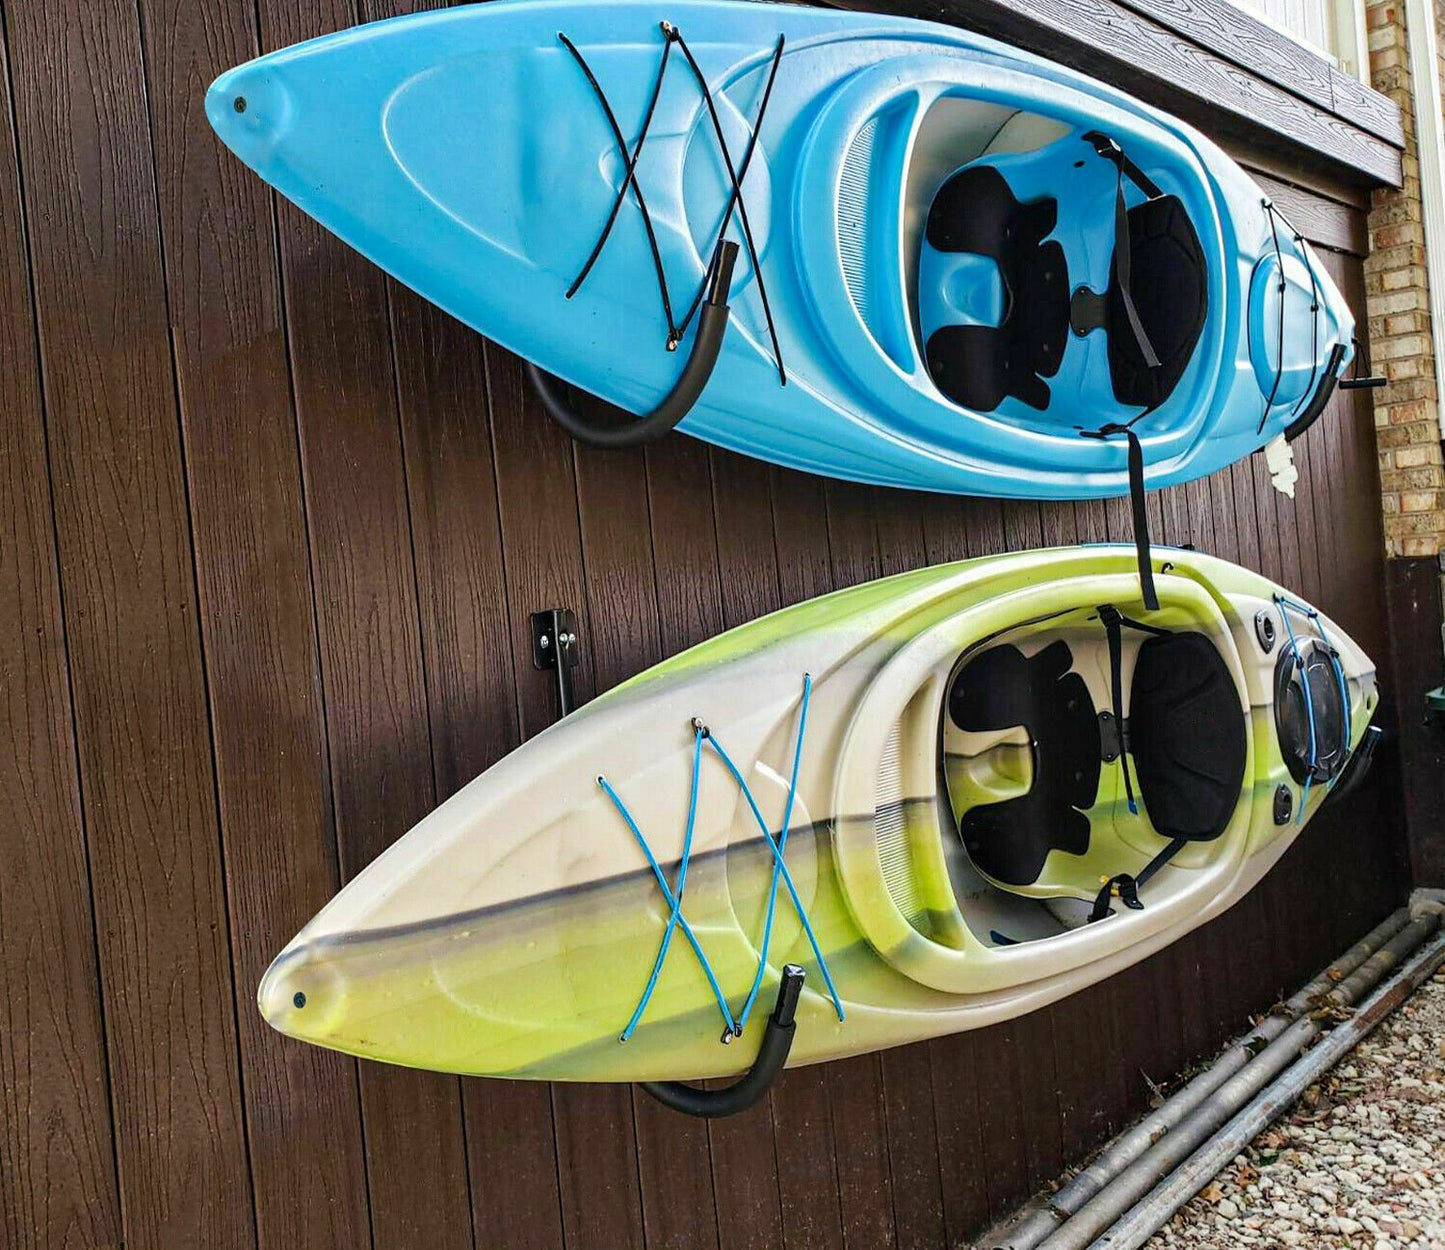 4 PCS Kayak Storage Wall Mount Hanger Rack for Canoe Paddle Kayak Hanging Hook by Plugsus Home Furniture